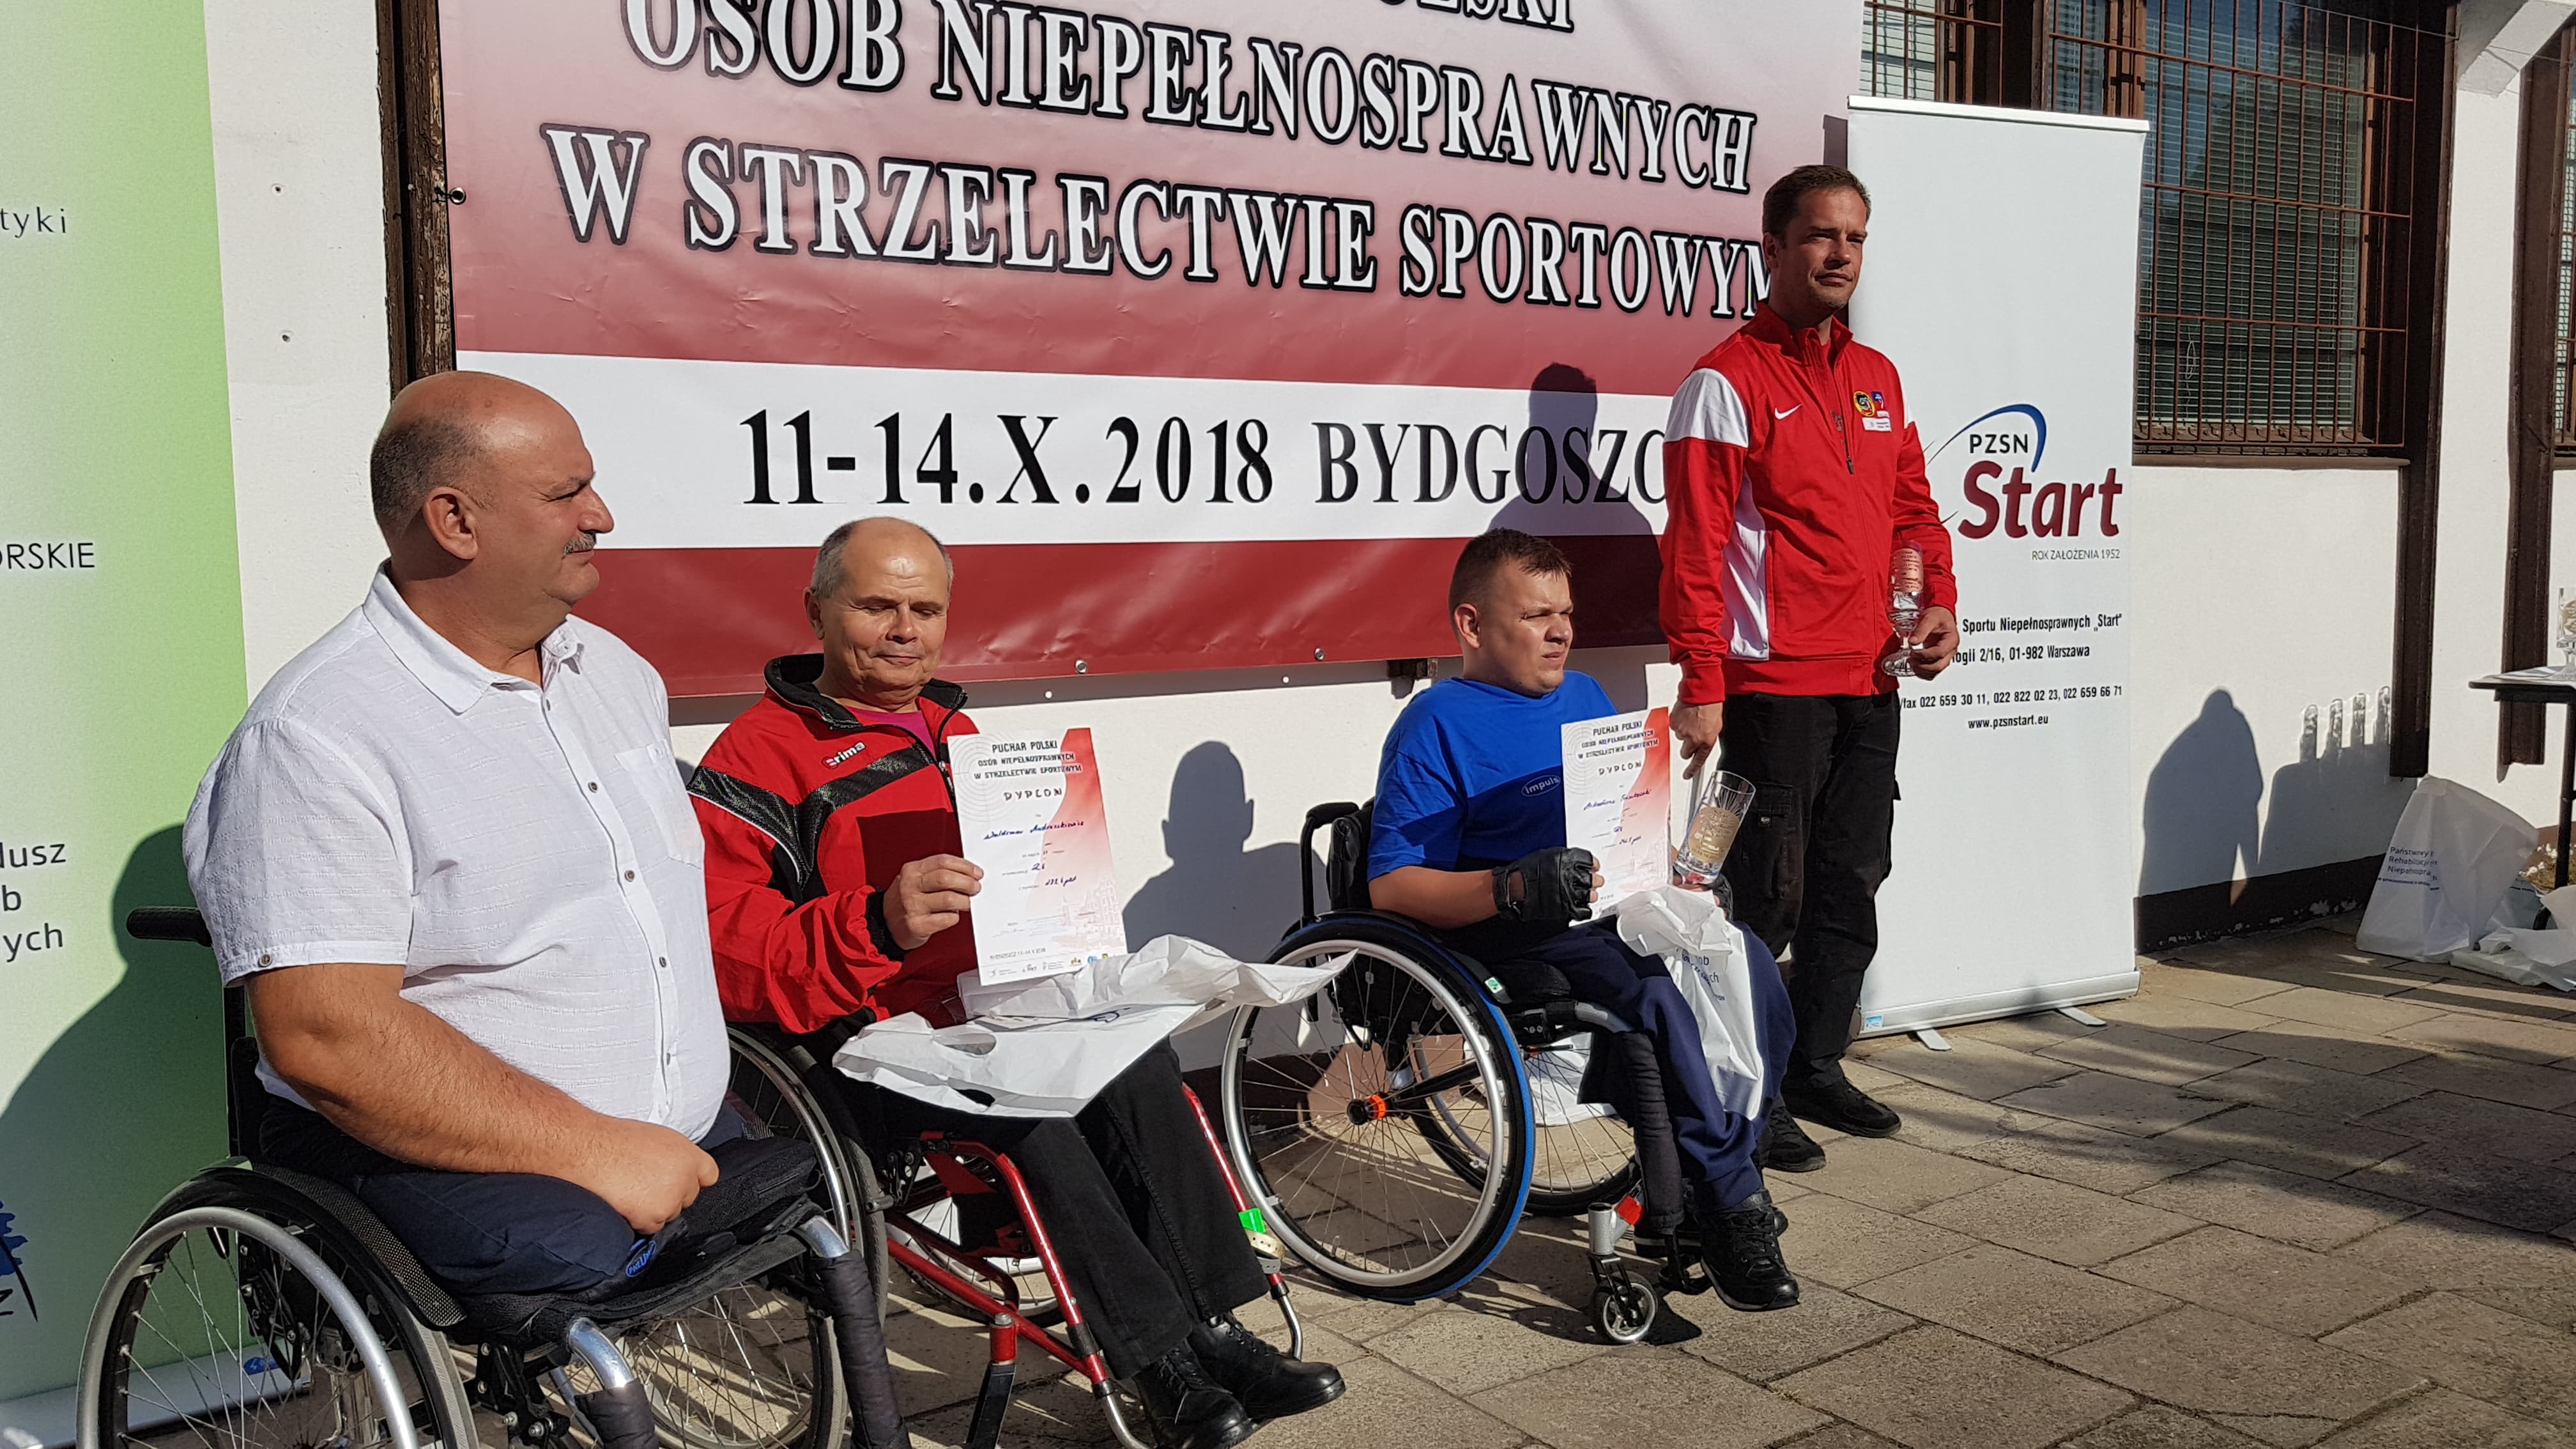 Puchar Polski Osób Niepełnosprawnych w Strzelectwie Sportowym (Bydgoszcz)